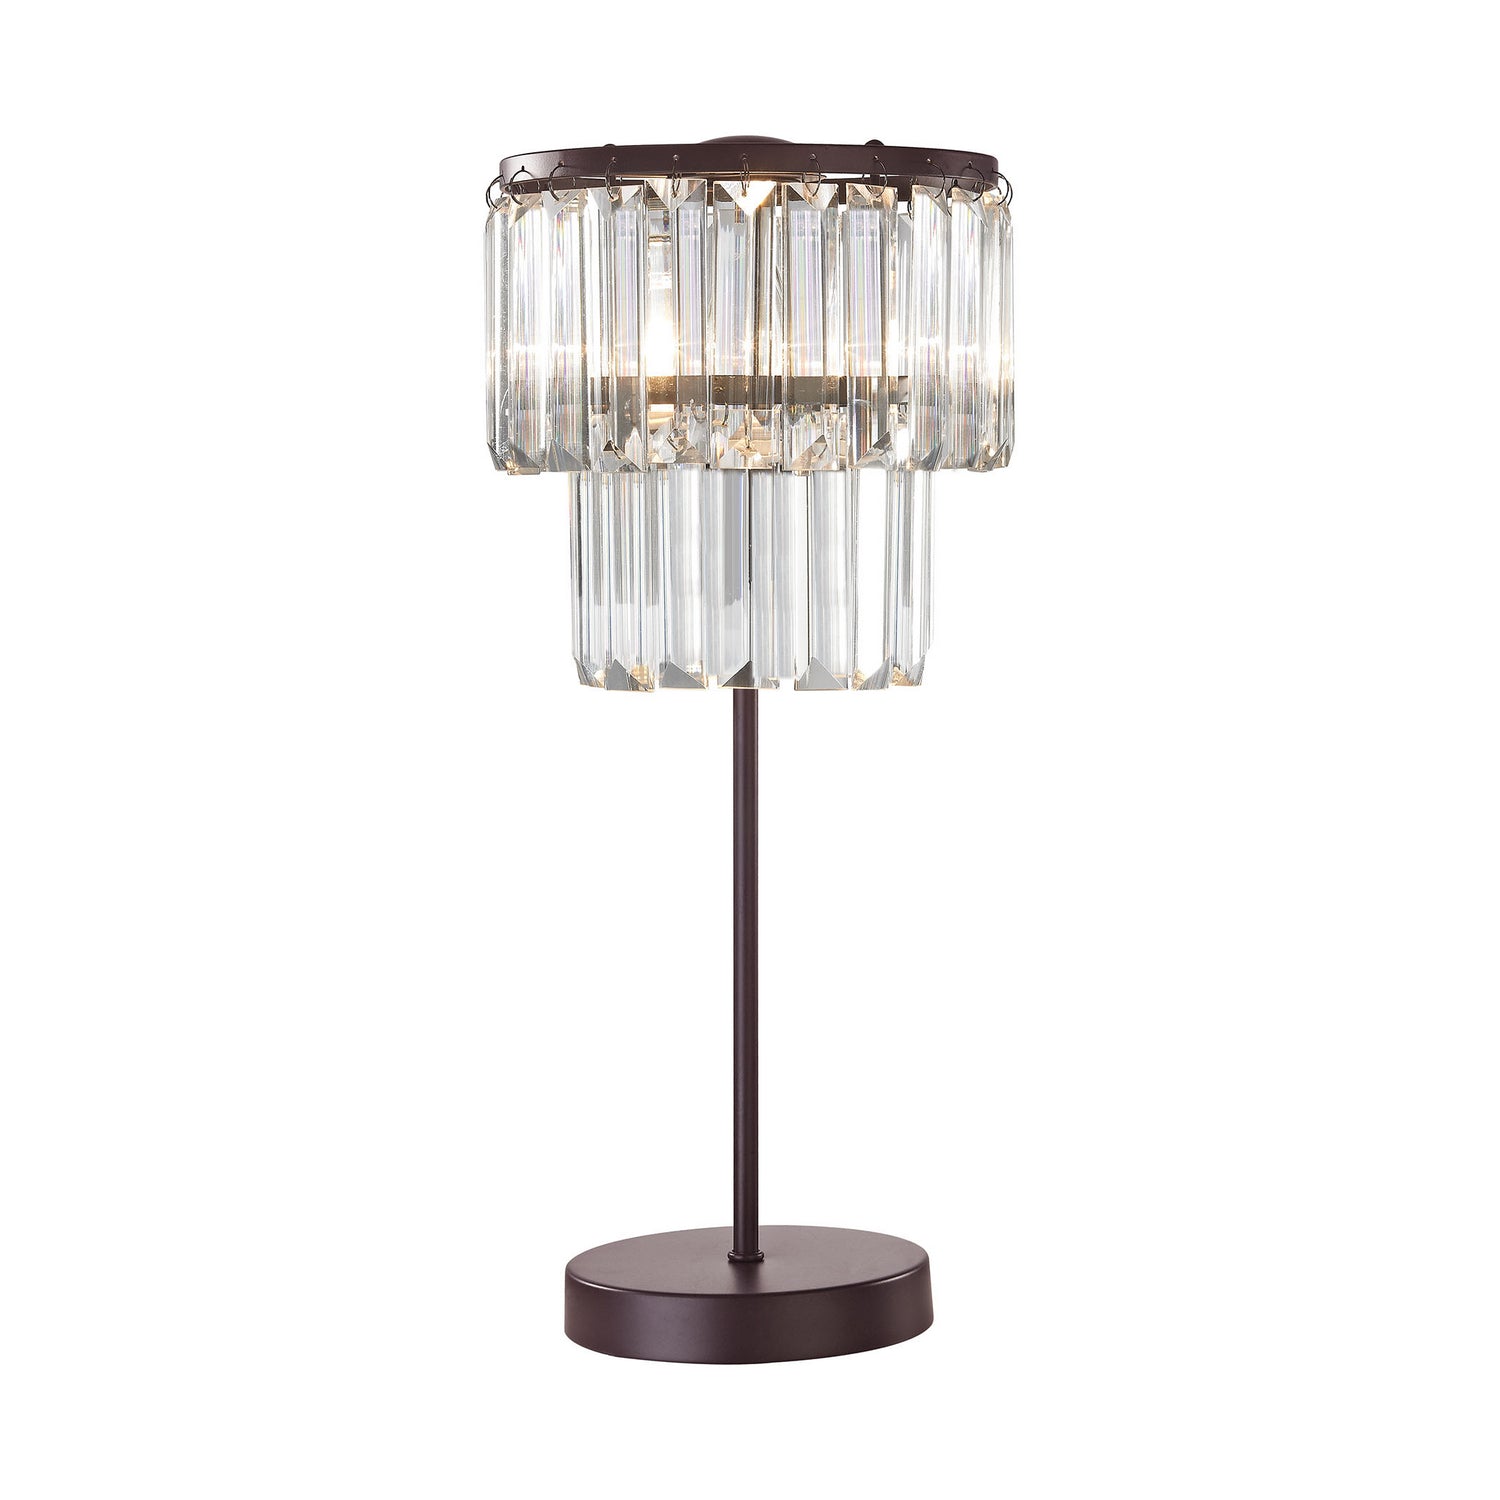 ELK Home - D3014 - One Light Table Lamp - Antoinette - Oil Rubbed Bronze